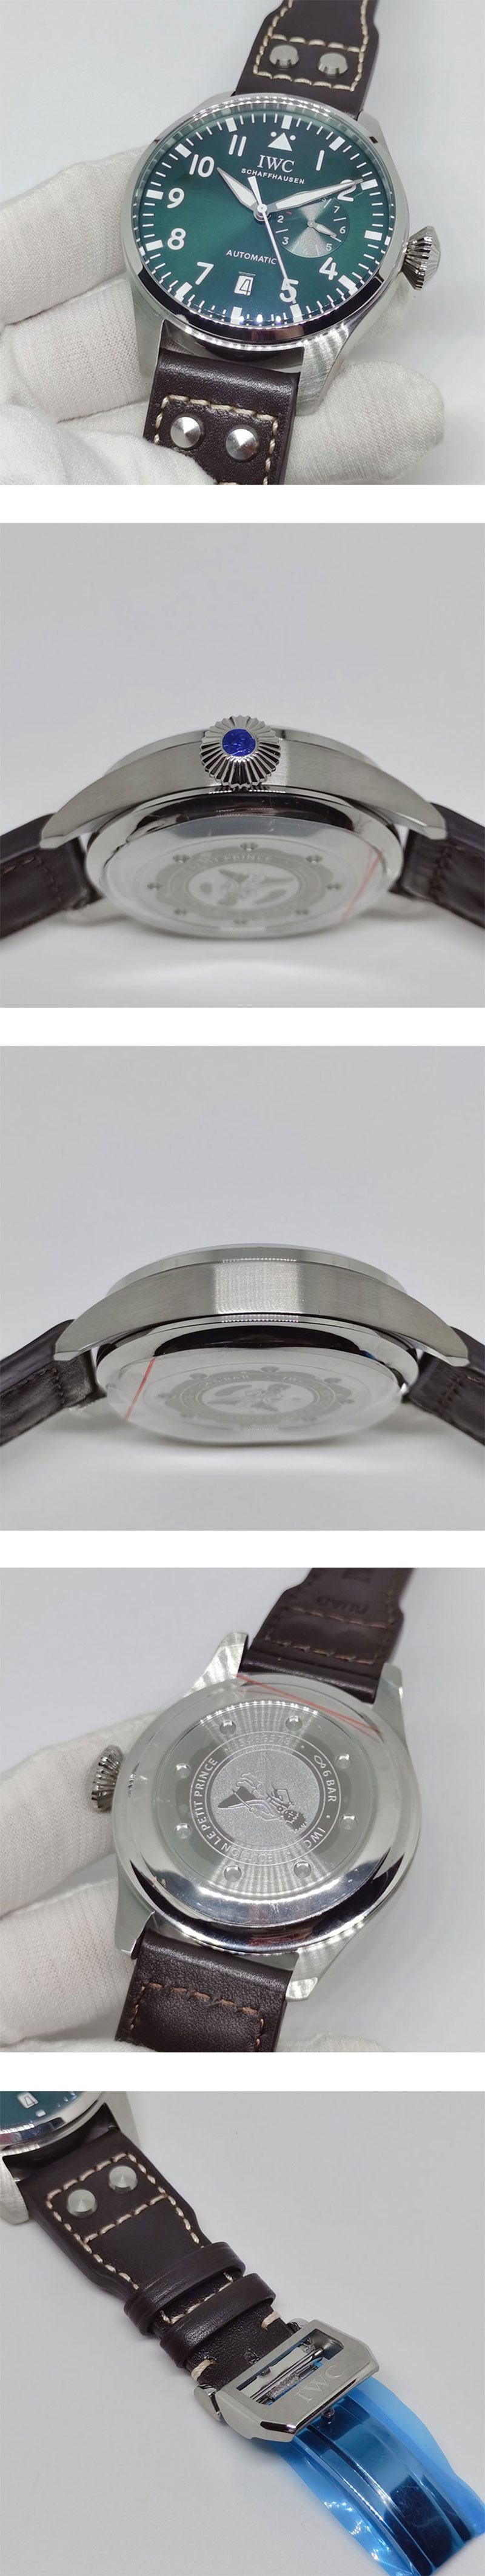 紳士腕時計【即発在庫有り】 IWC  IW501015-ビッグ・パイロット・スーパーコピー時計